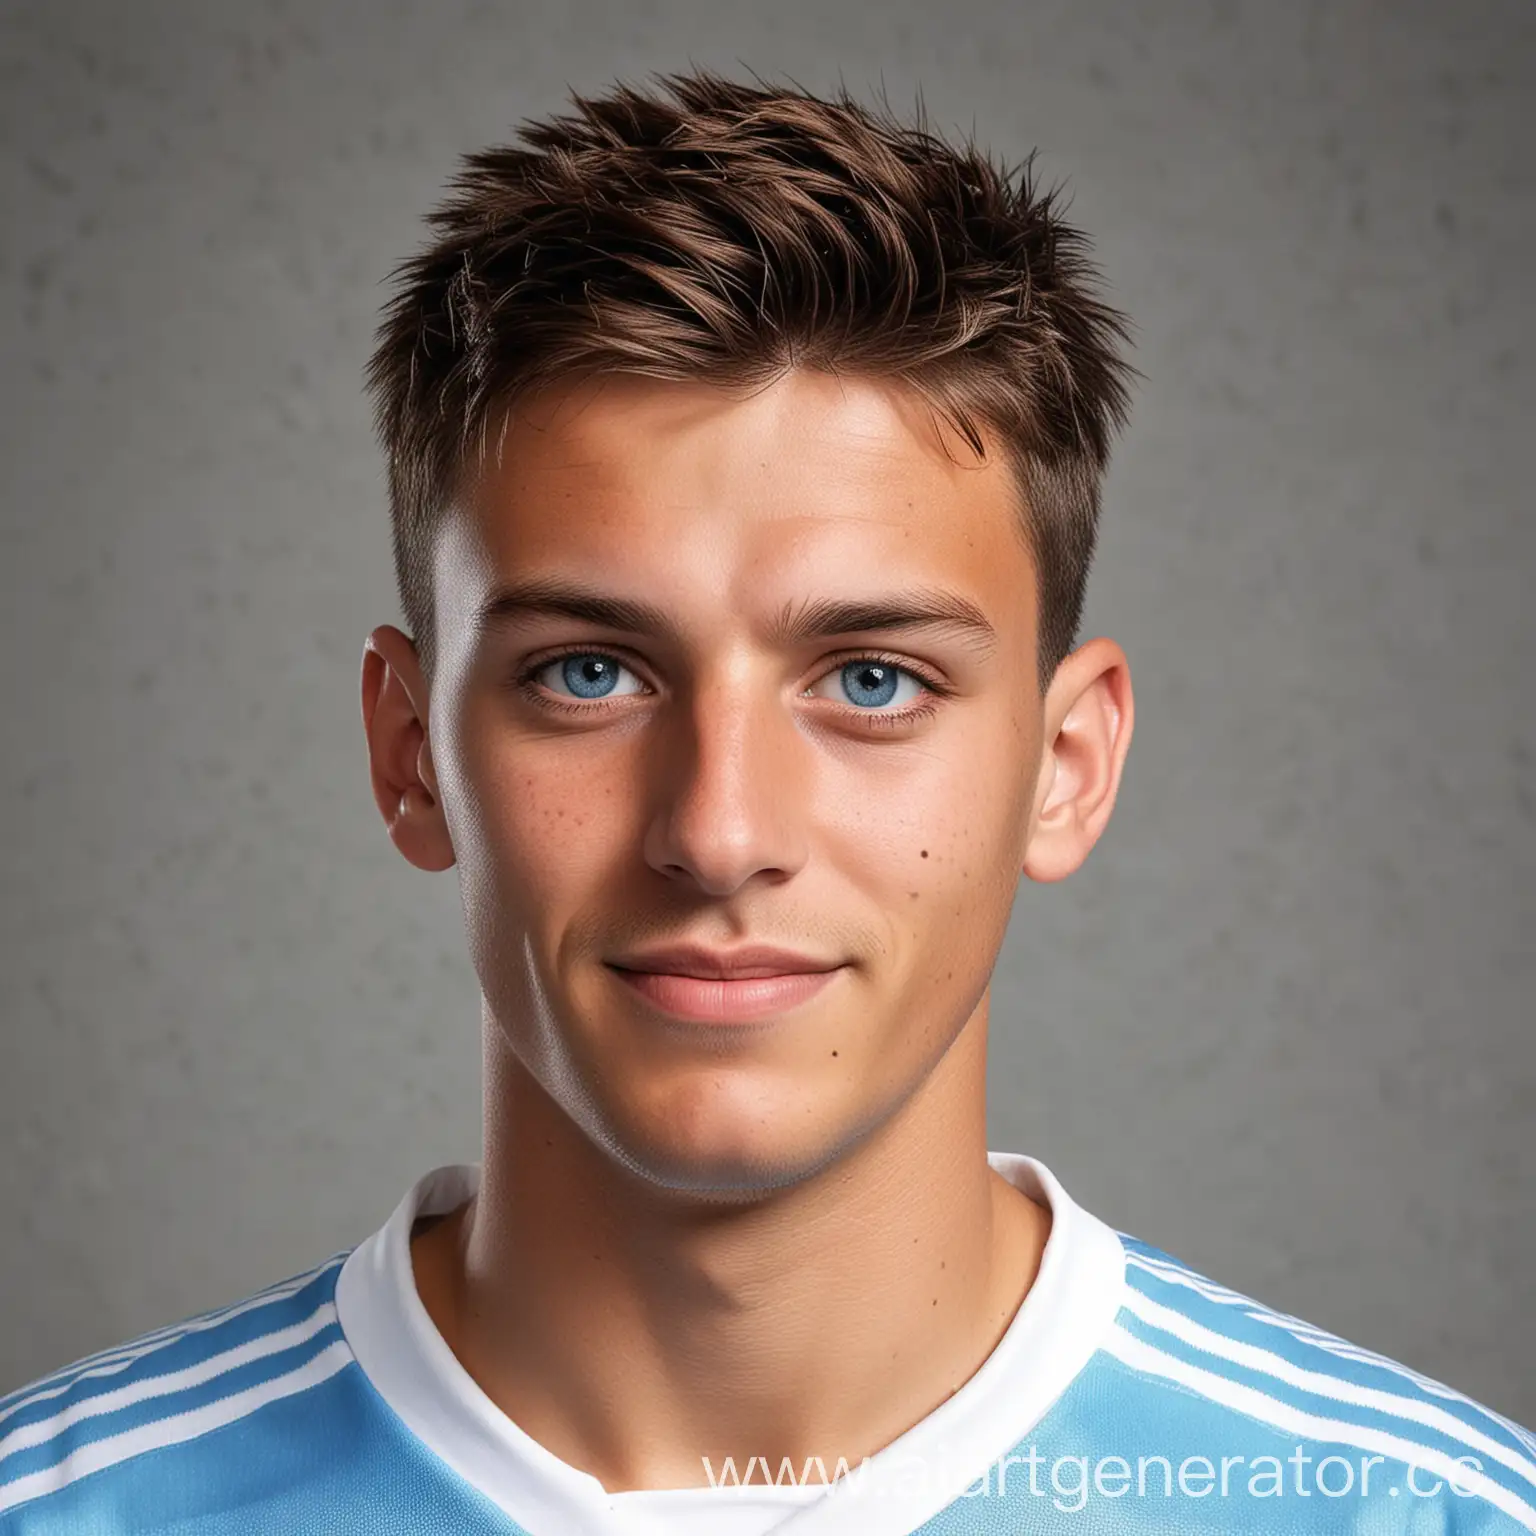 аргентинский футболист, молодой, с очень короткой стрижкой, голубыми глазами, как реальный человек, немного улыбчивый, фото как на паспорт, в бело-голубой футбольной форме